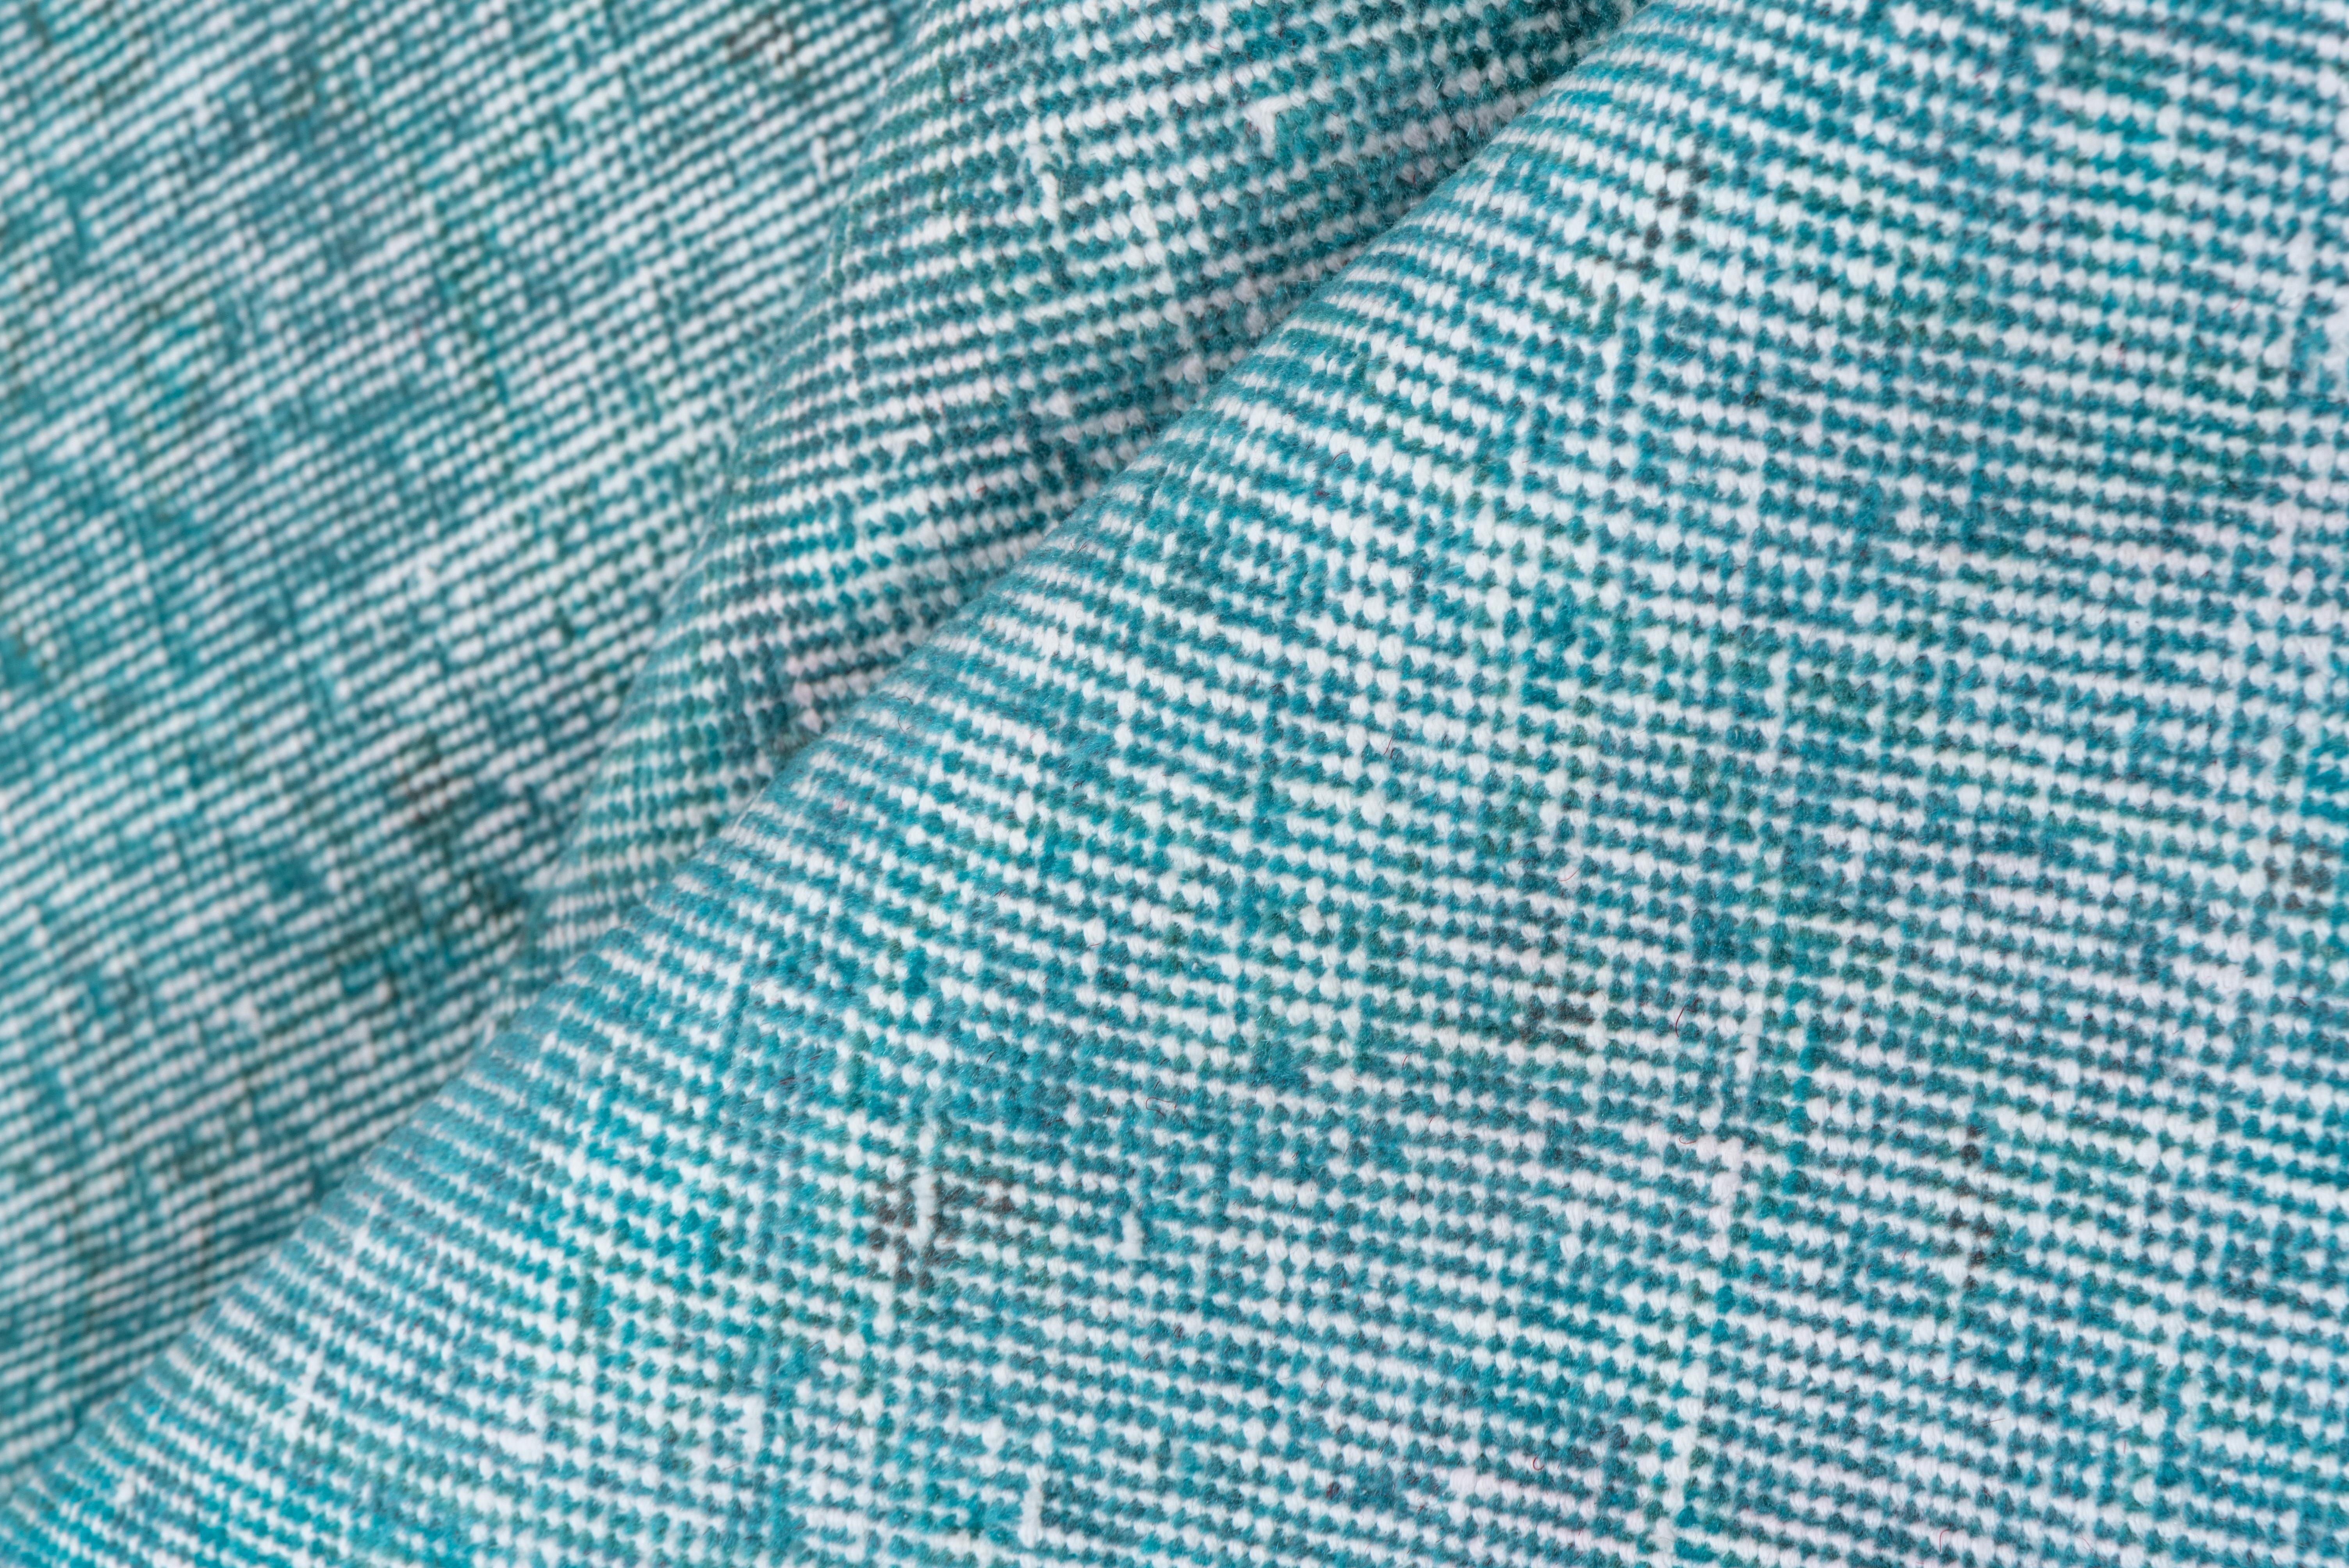 Dieser leuchtend türkisfarbene, durchgefärbte Teppich hat ein Muster, das durch die Abnutzung jenseits der allgemeinen Notlage definiert ist. Vertikale und horizontale, gebrochen weiße Streifen kreuzen sich in der Nähe der Mitte.